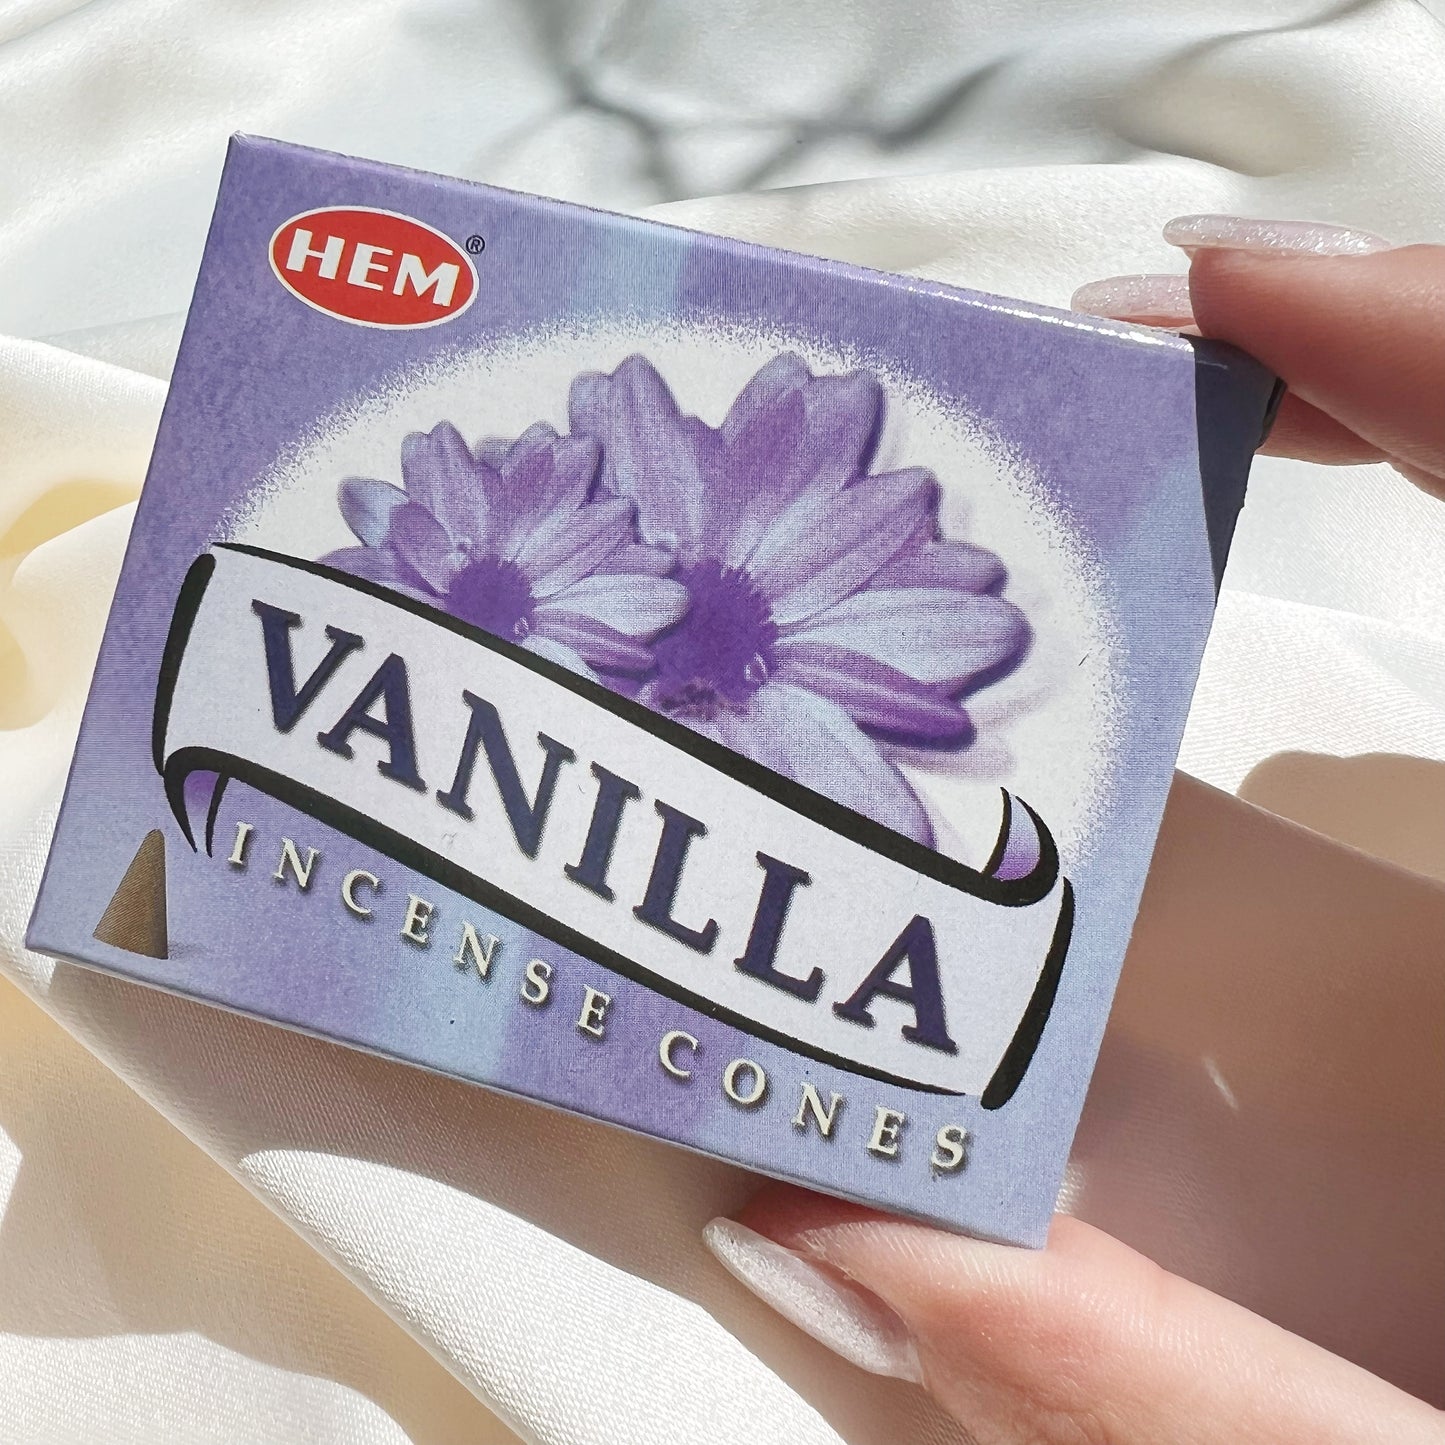 Vanilla Incense Cones